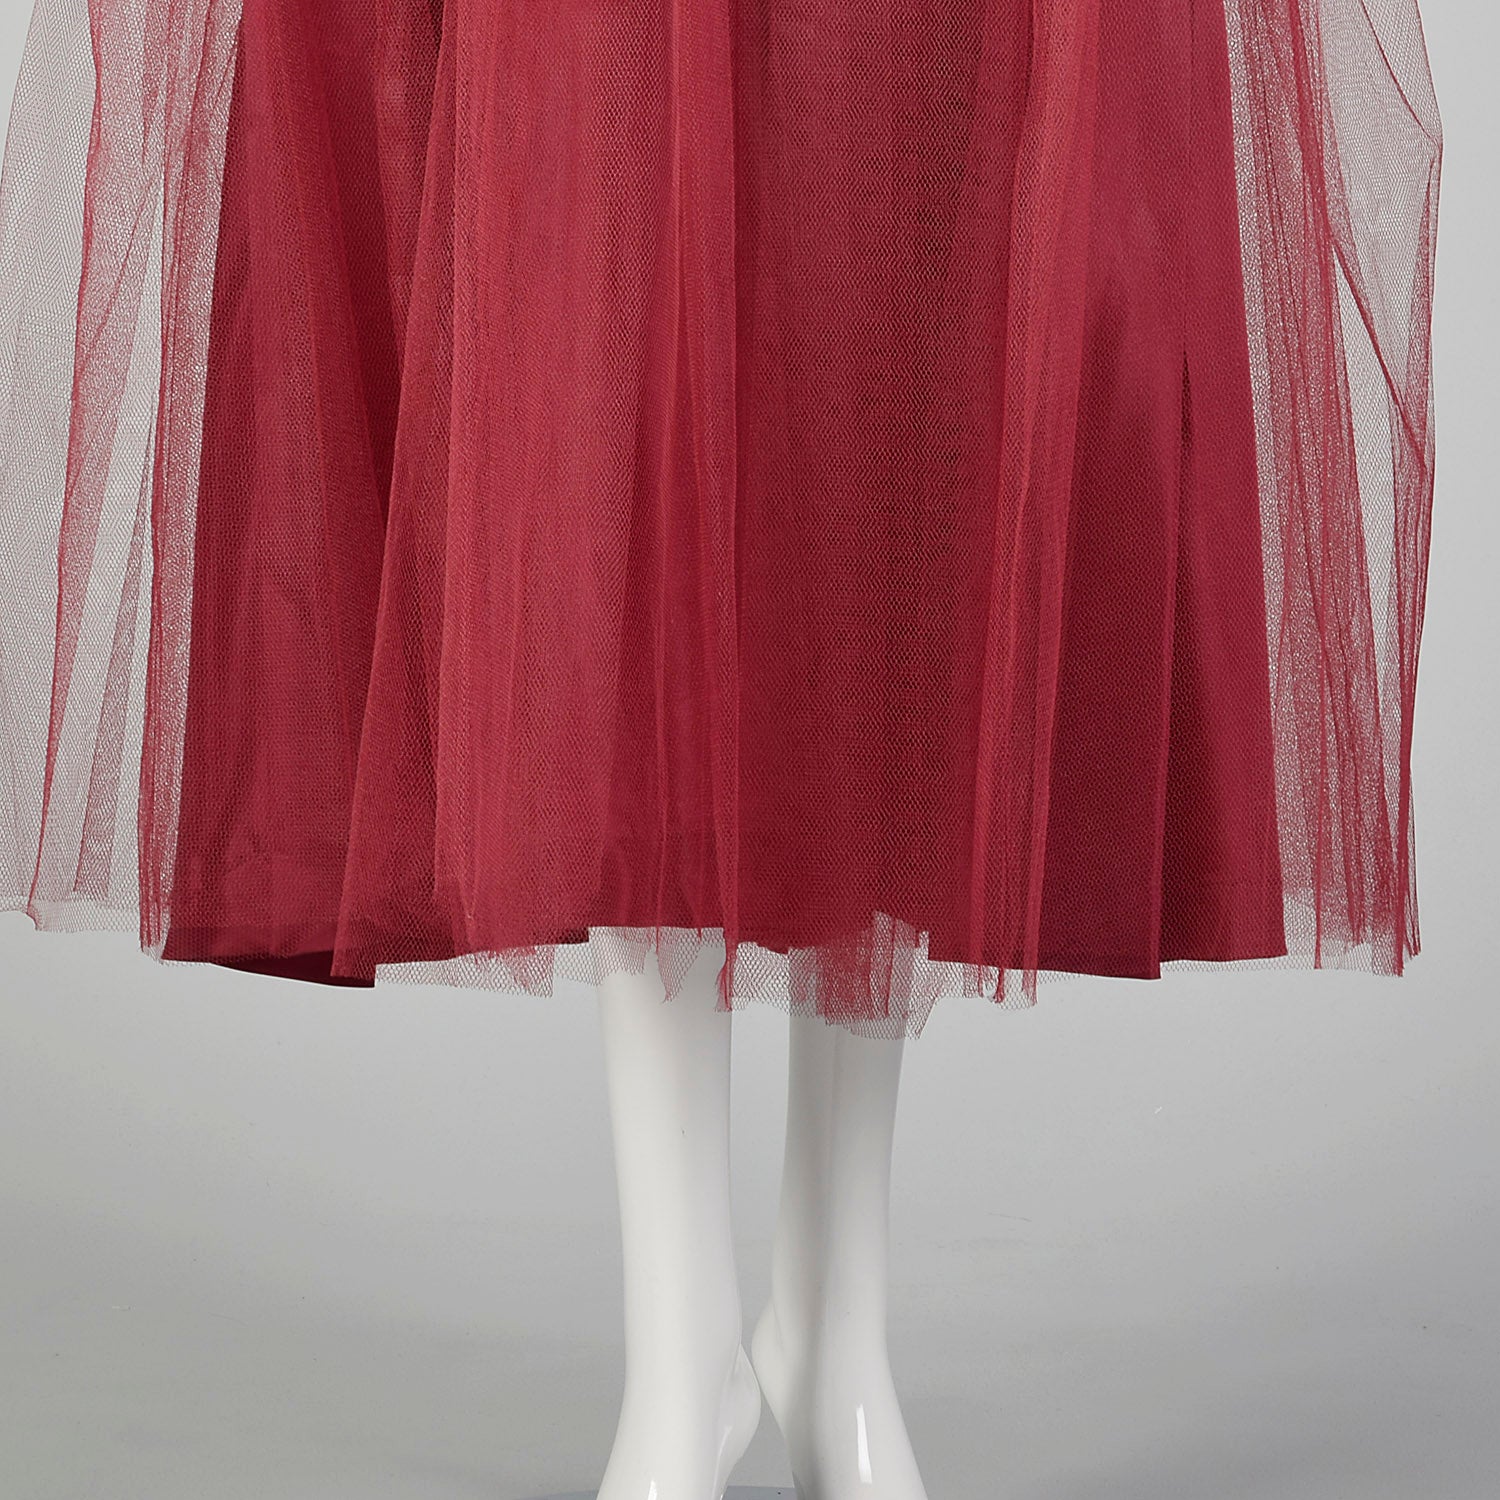 XXS 1940s Prom Dress